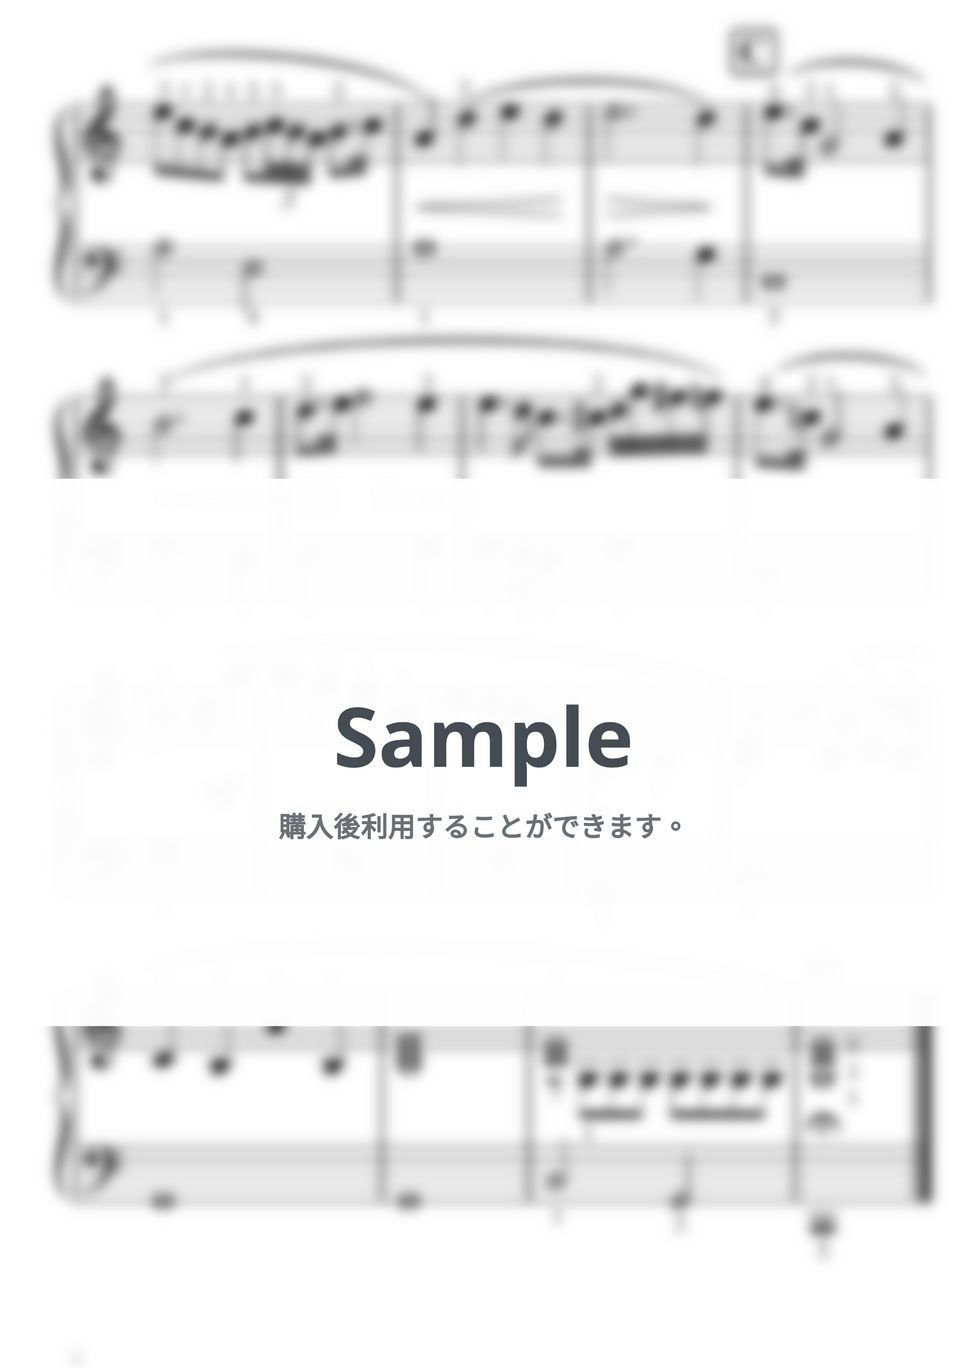 ショパン - 【初級】雨だれの前奏曲 by ピアノの先生の楽譜集